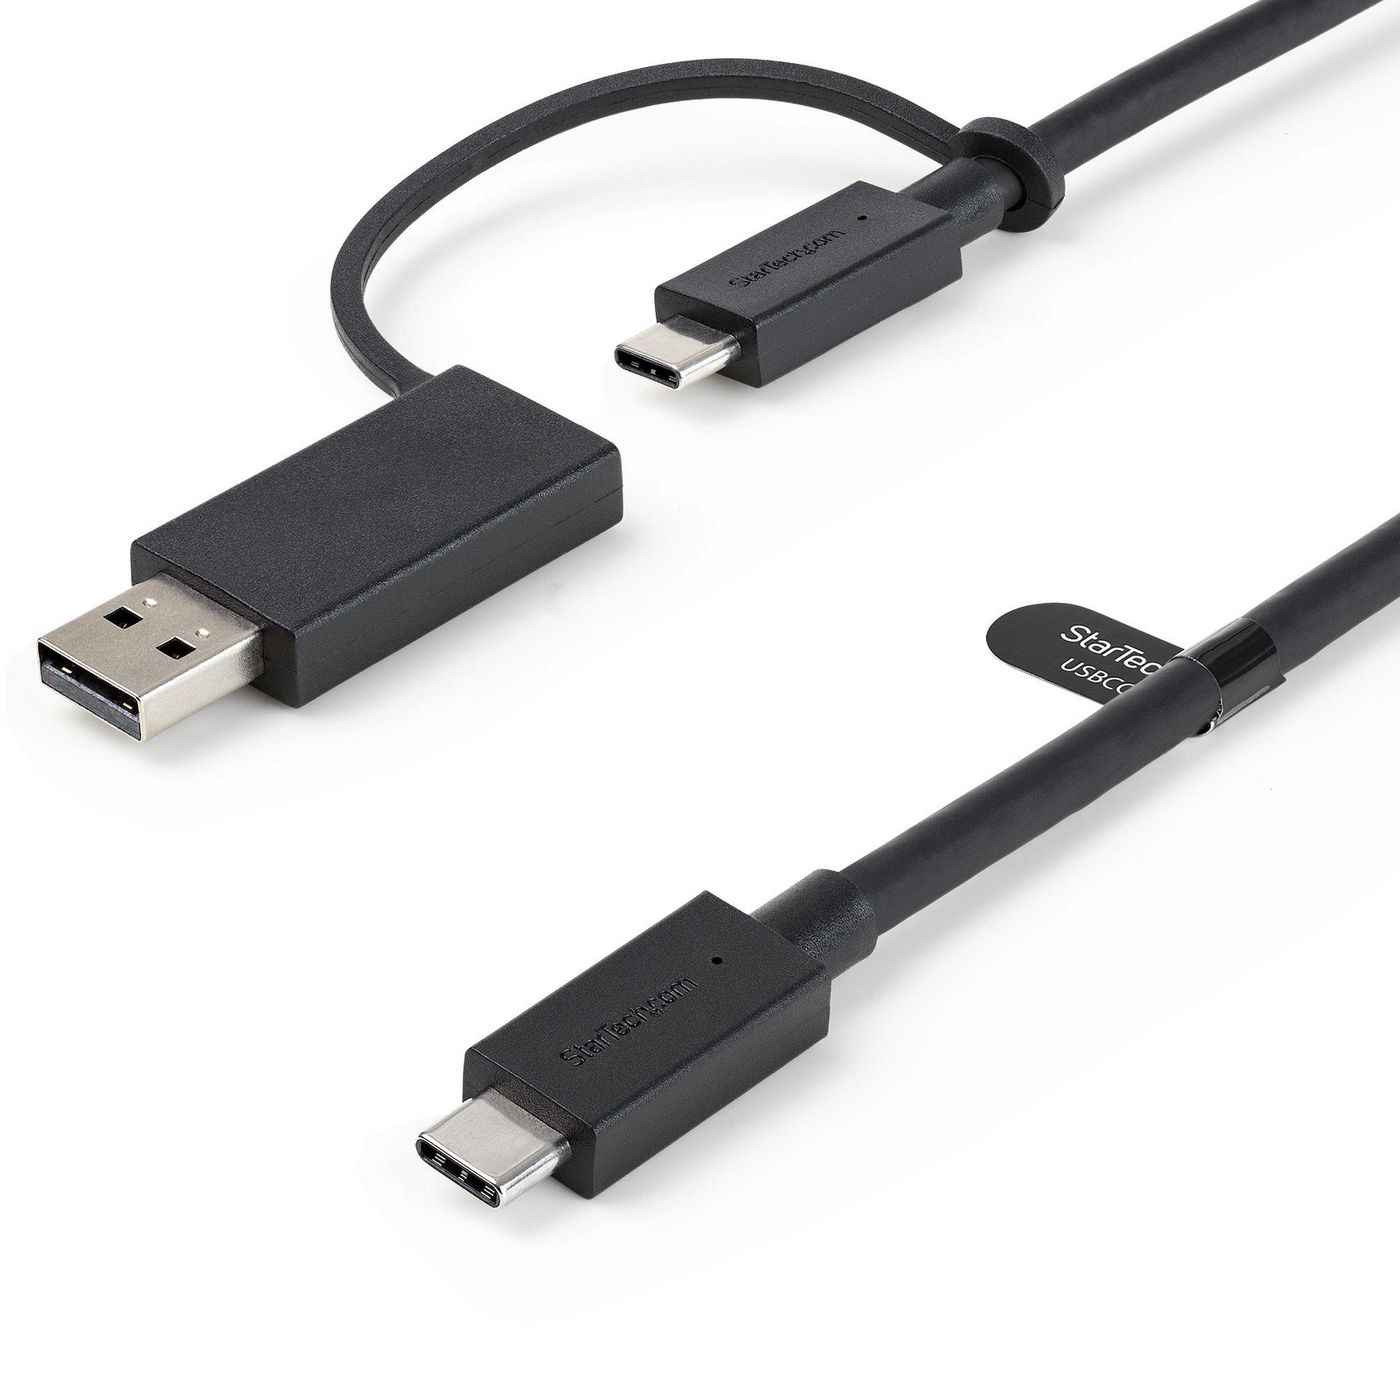 STARTECH.COM 1m USB-C Kabel mit USB-A Adapter Dongle - Hybrid 2-in-1 USB-C Kabel mit USB-A - USB-C a